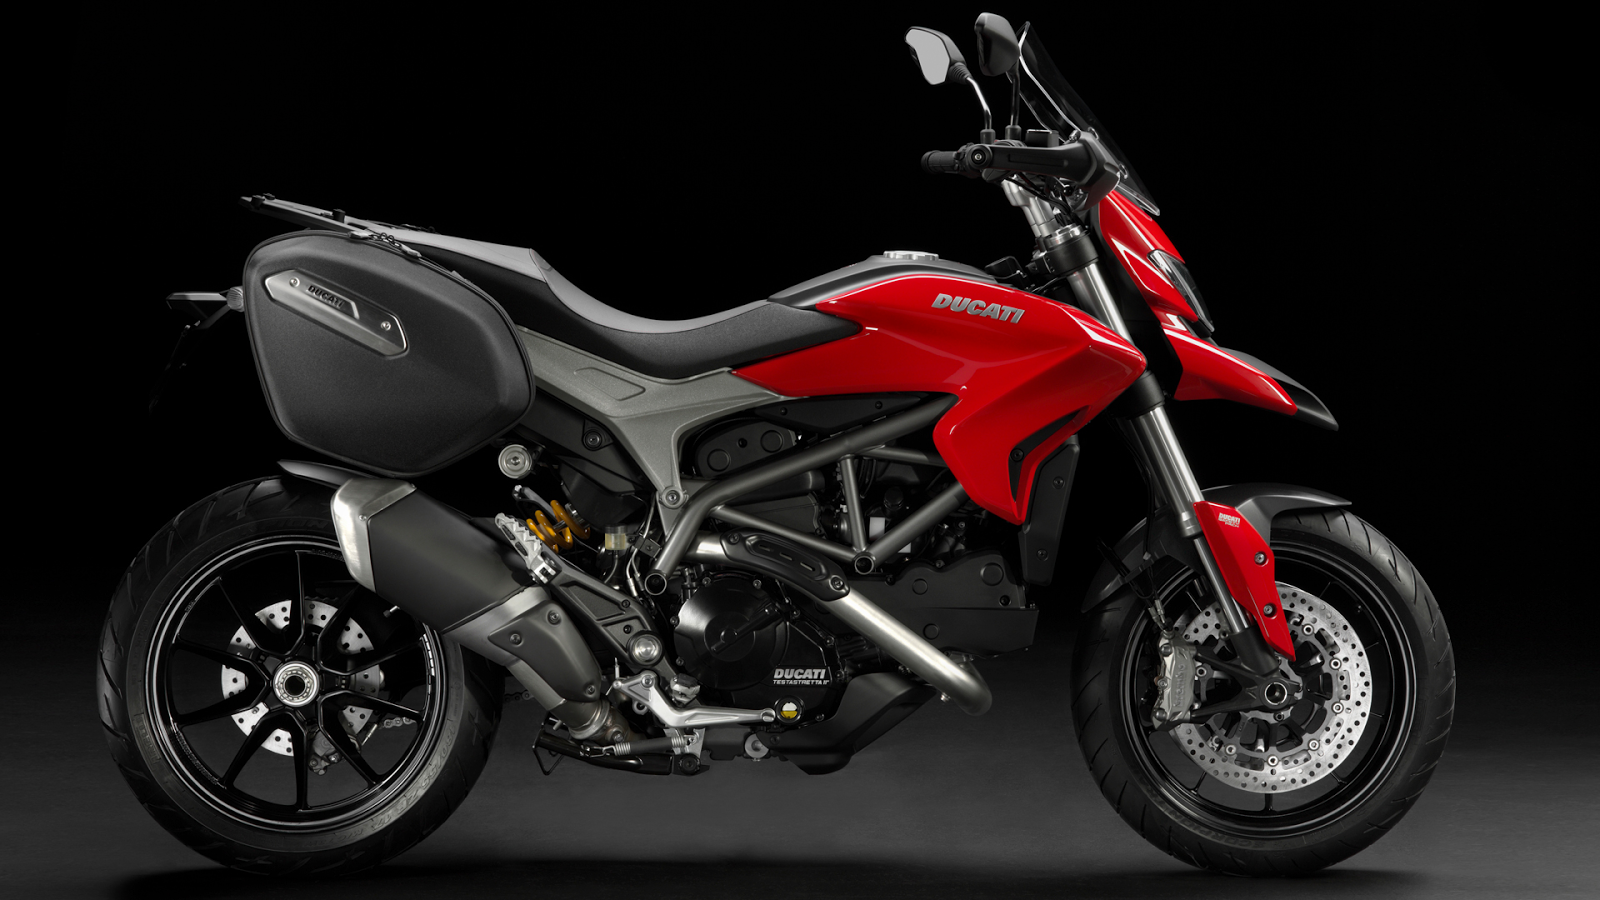 Koleksi Gambar Motor Ducati Keren Terbaru Stamodifikasi